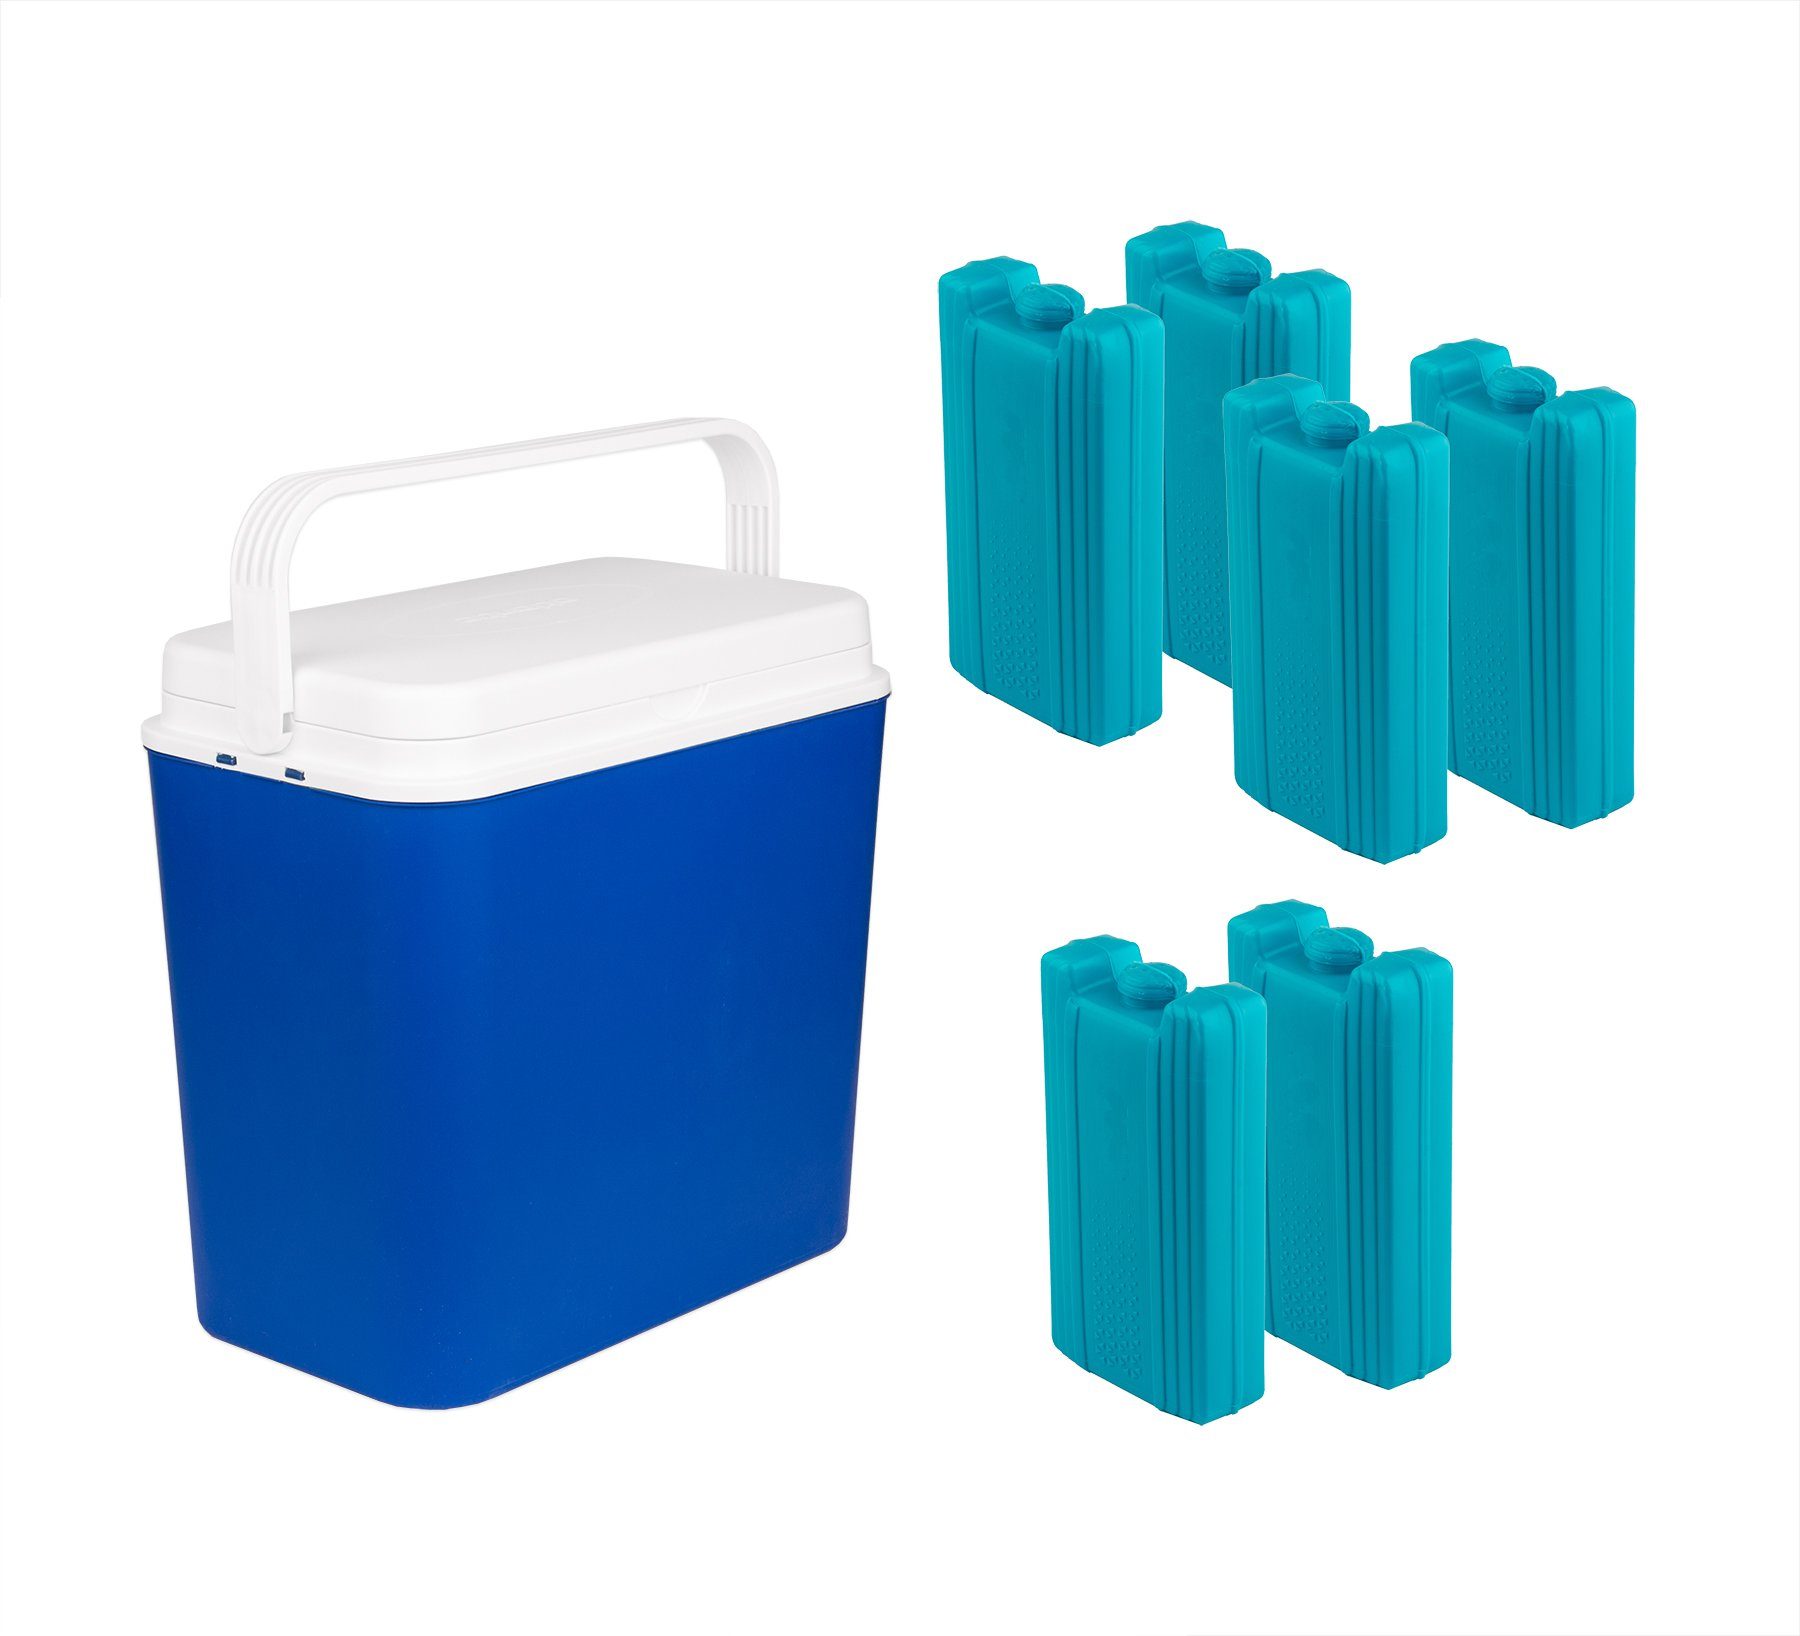 BigDean Outdoor-Flaschenkühler Kühlbox 24 Liter blau inkl. 6 Kühlakkus −  Bis zu 9 Std. Kühlung − Kühltasche für unterwegs online kaufen | OTTO